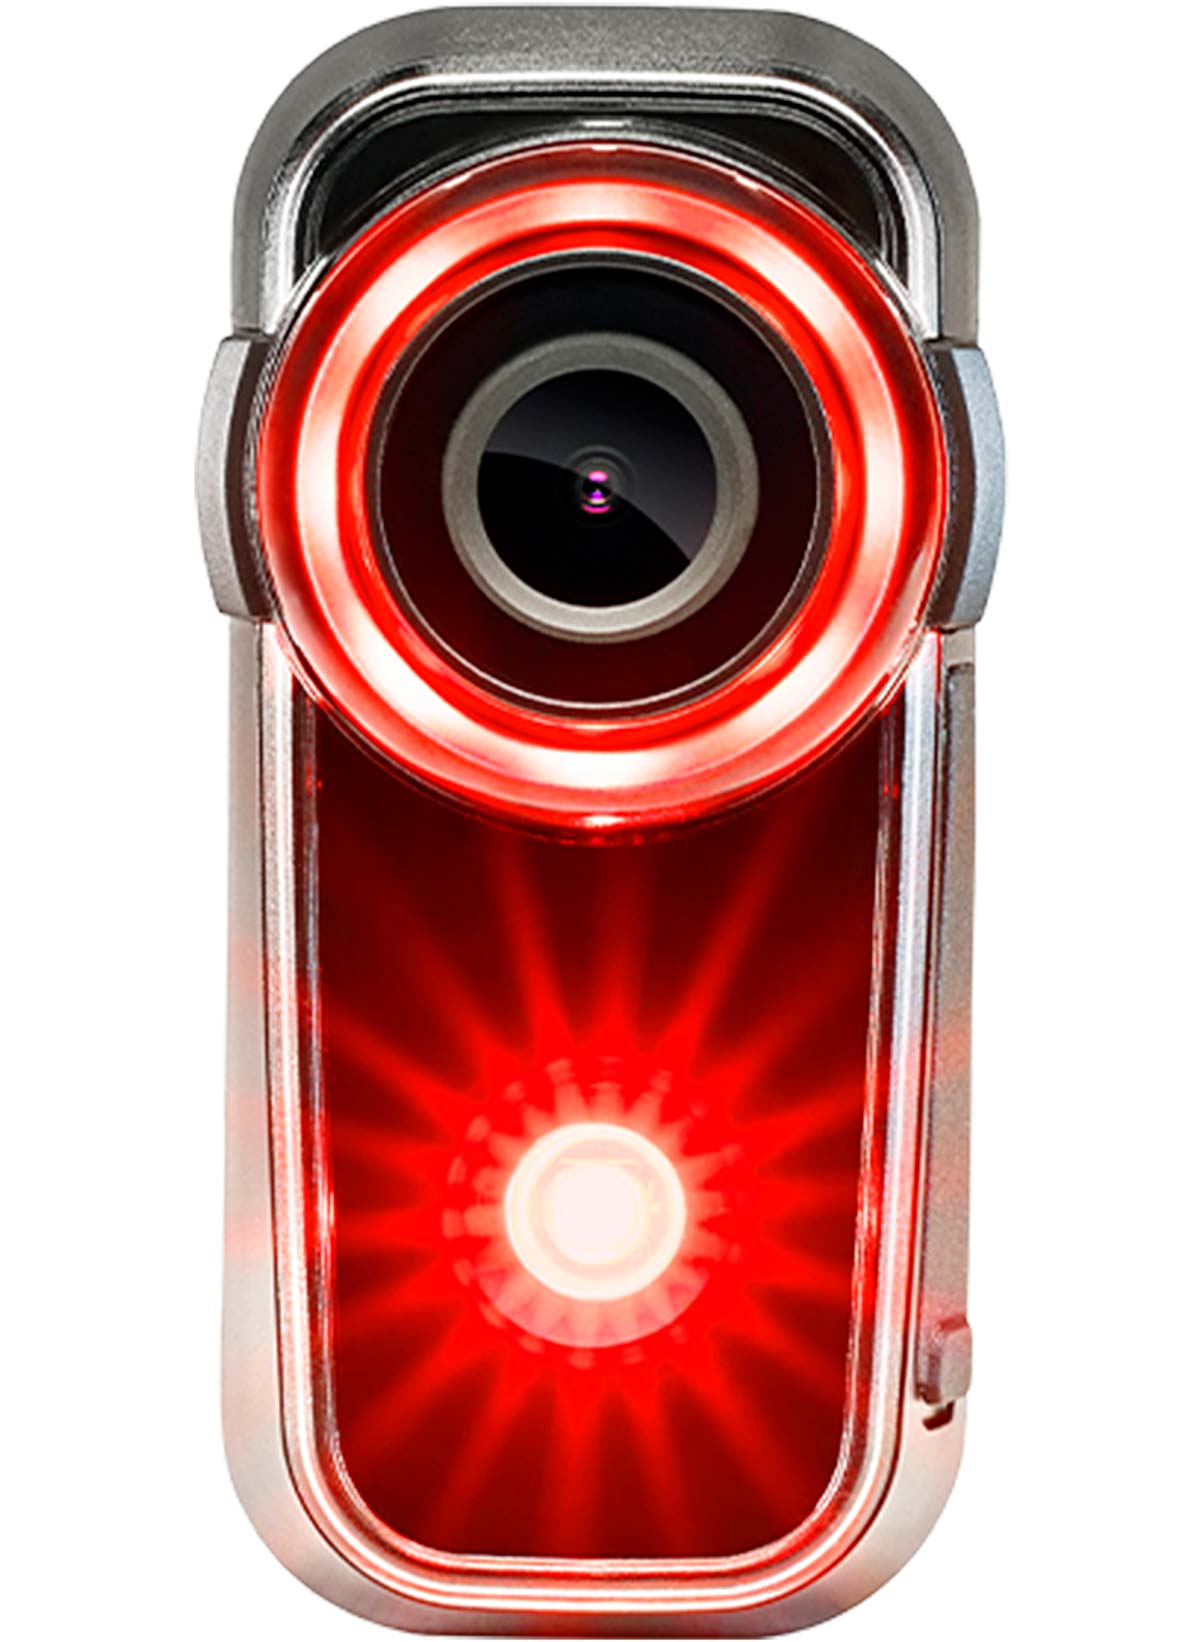 En TodoMountainBike: La luz trasera con cámara integrada Cycliq Fly6 estrena una versión de tamaño más compacto